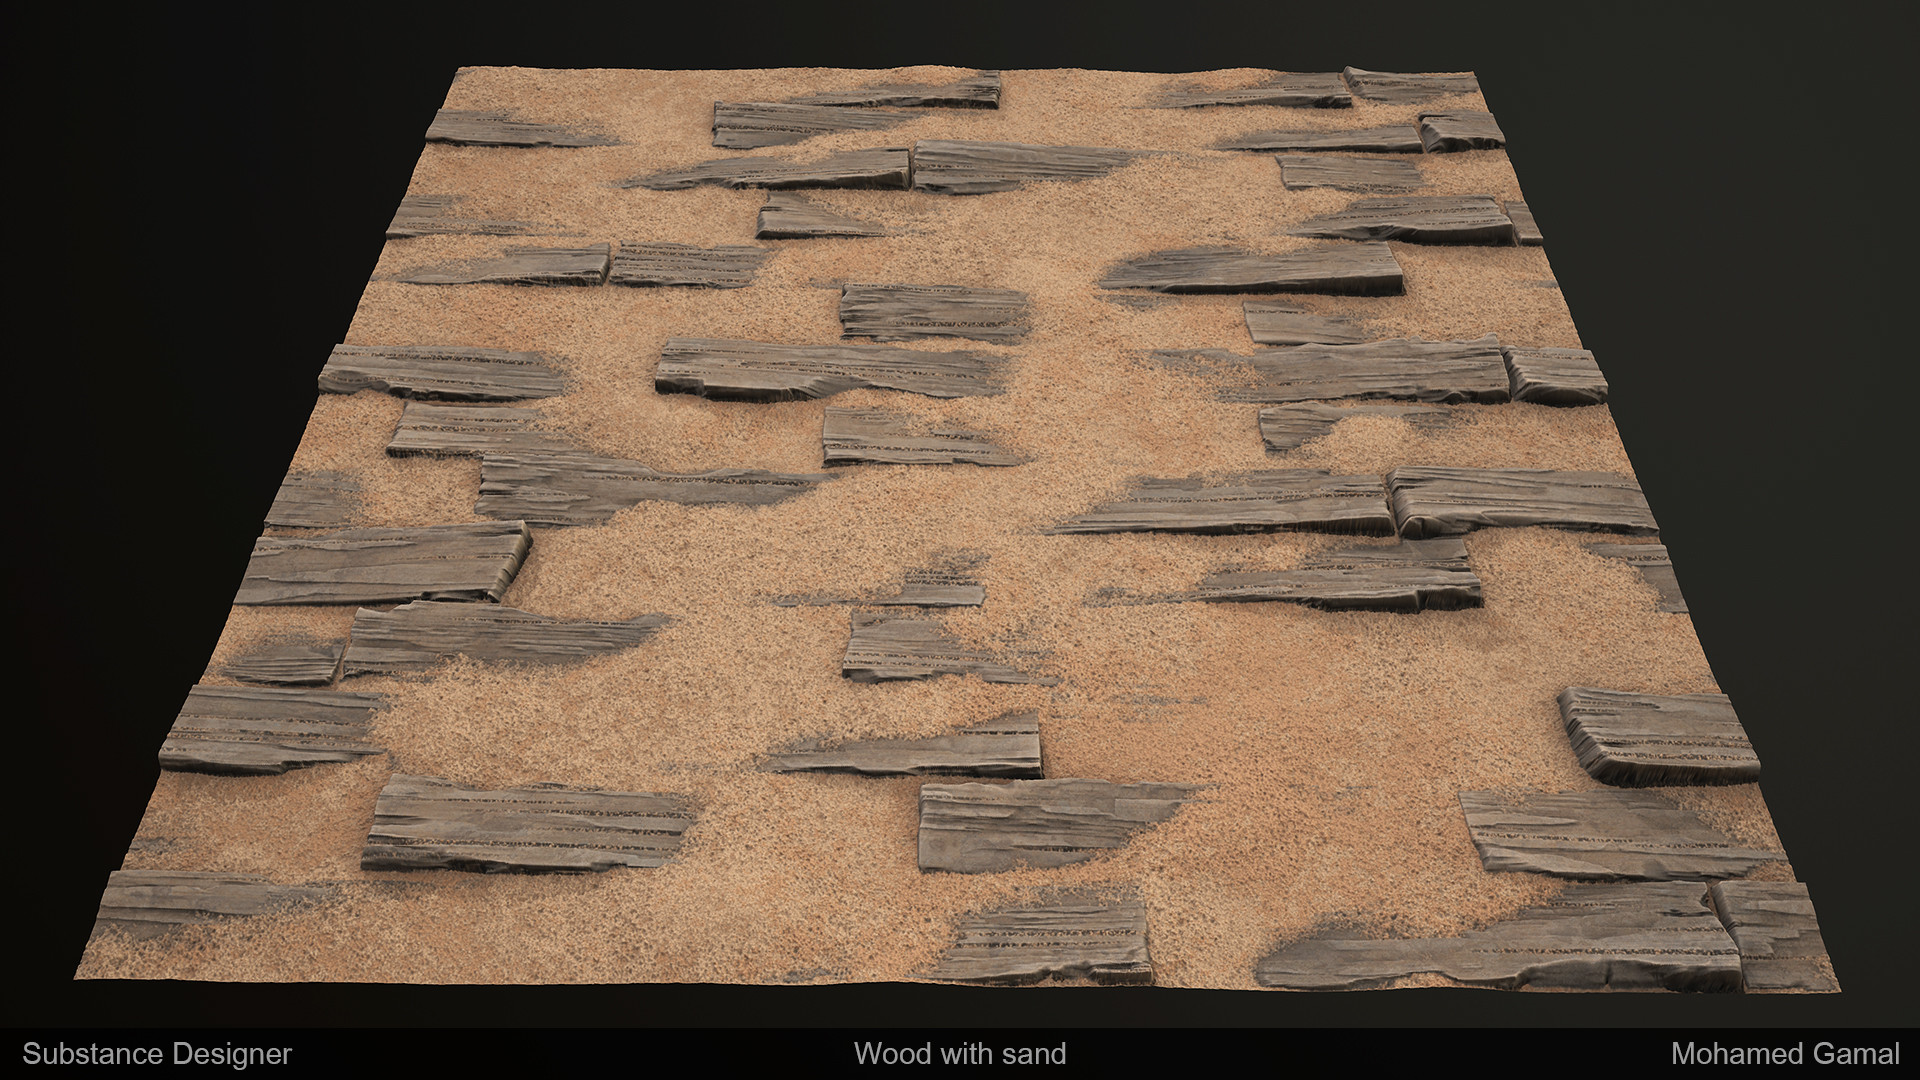 ArtStation - Wood with sand - Substance Designer , Mohamed Gamal